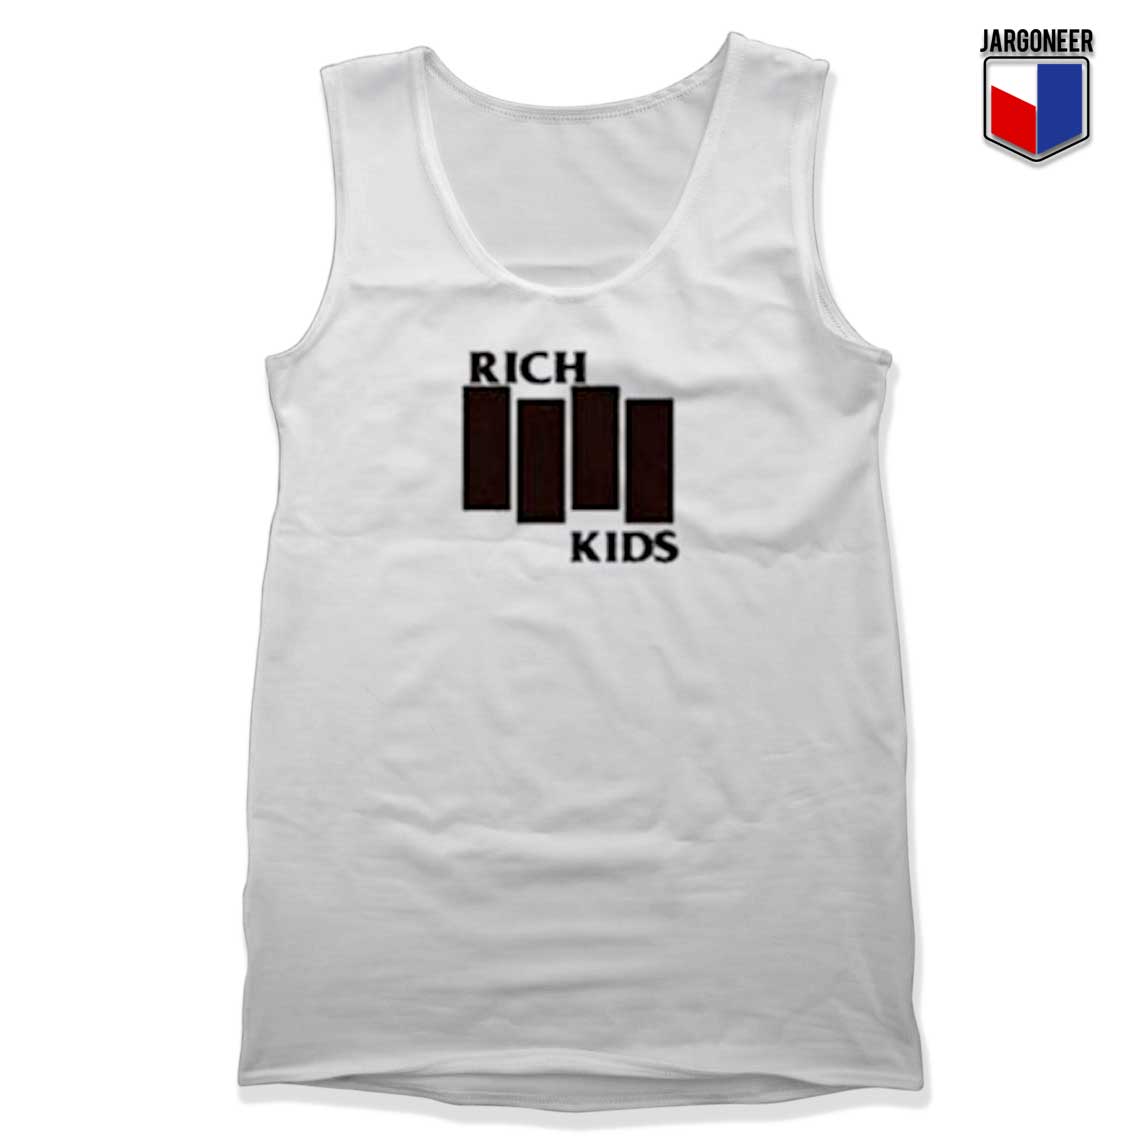 Rich Kids Black Flag Unisex Adult Tank Top Design - Shop Unique Graphic Cool Shirt Designs